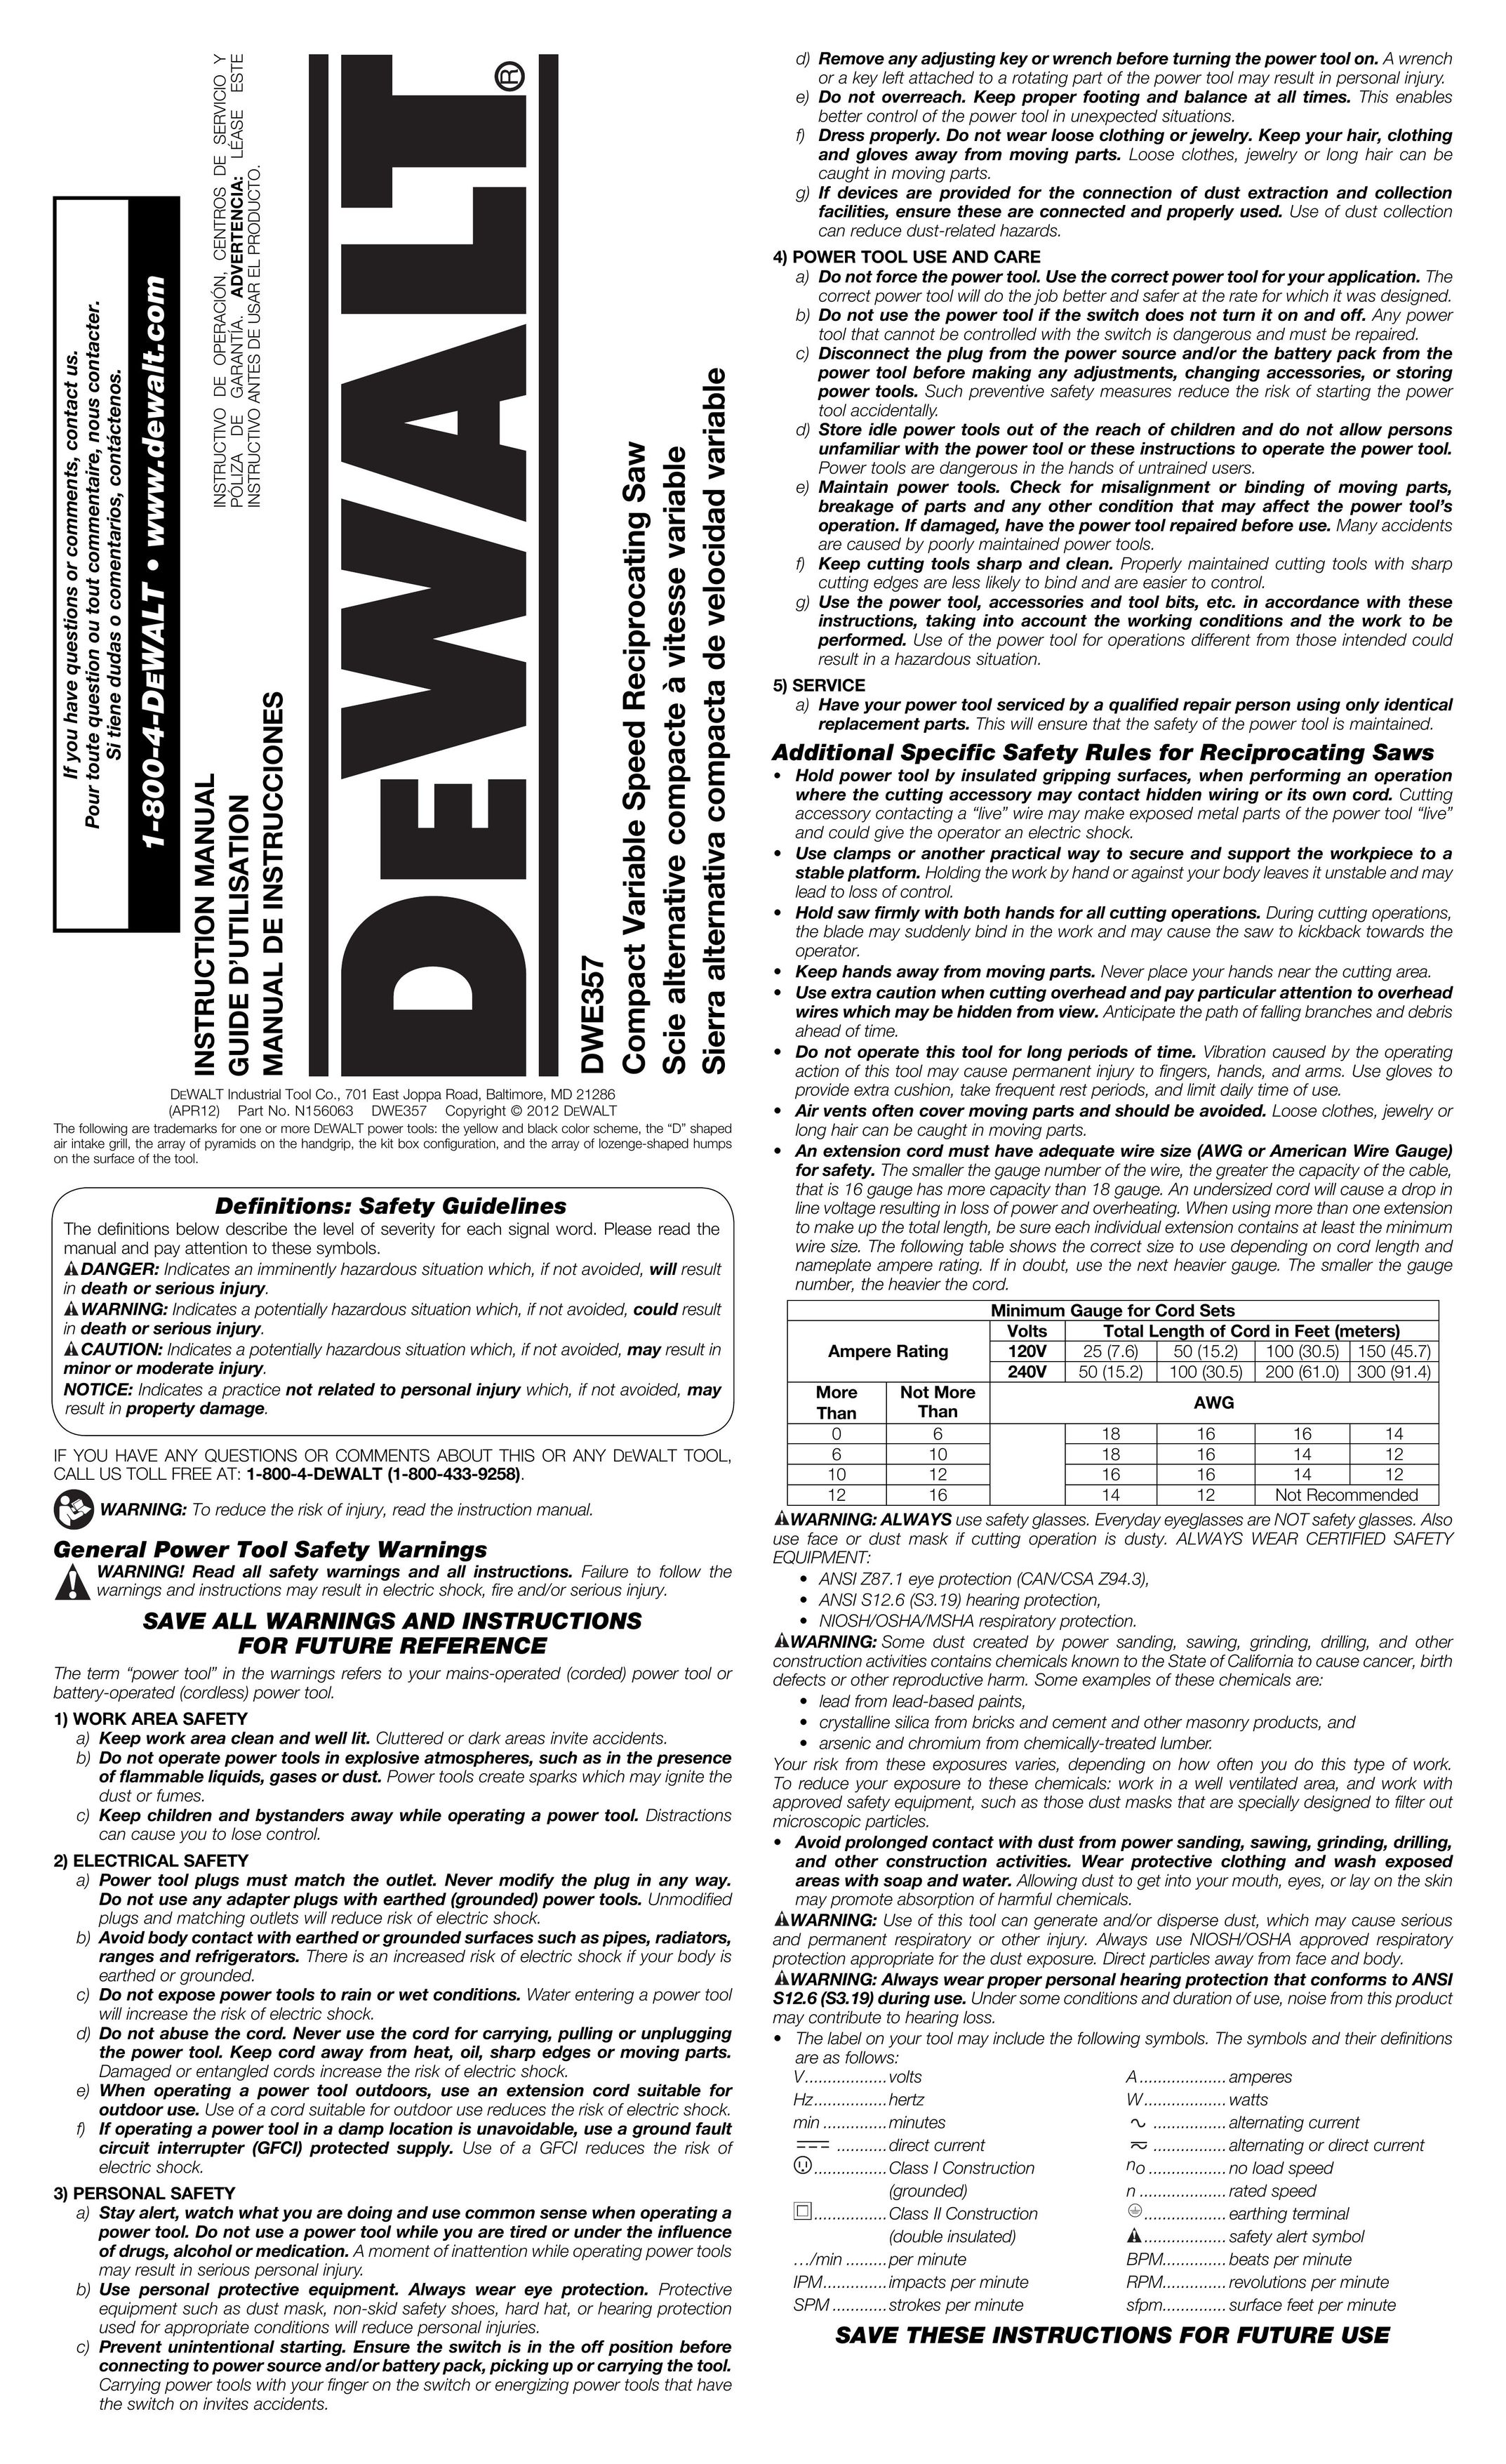 DeWalt DWE357 Cordless Saw User Manual